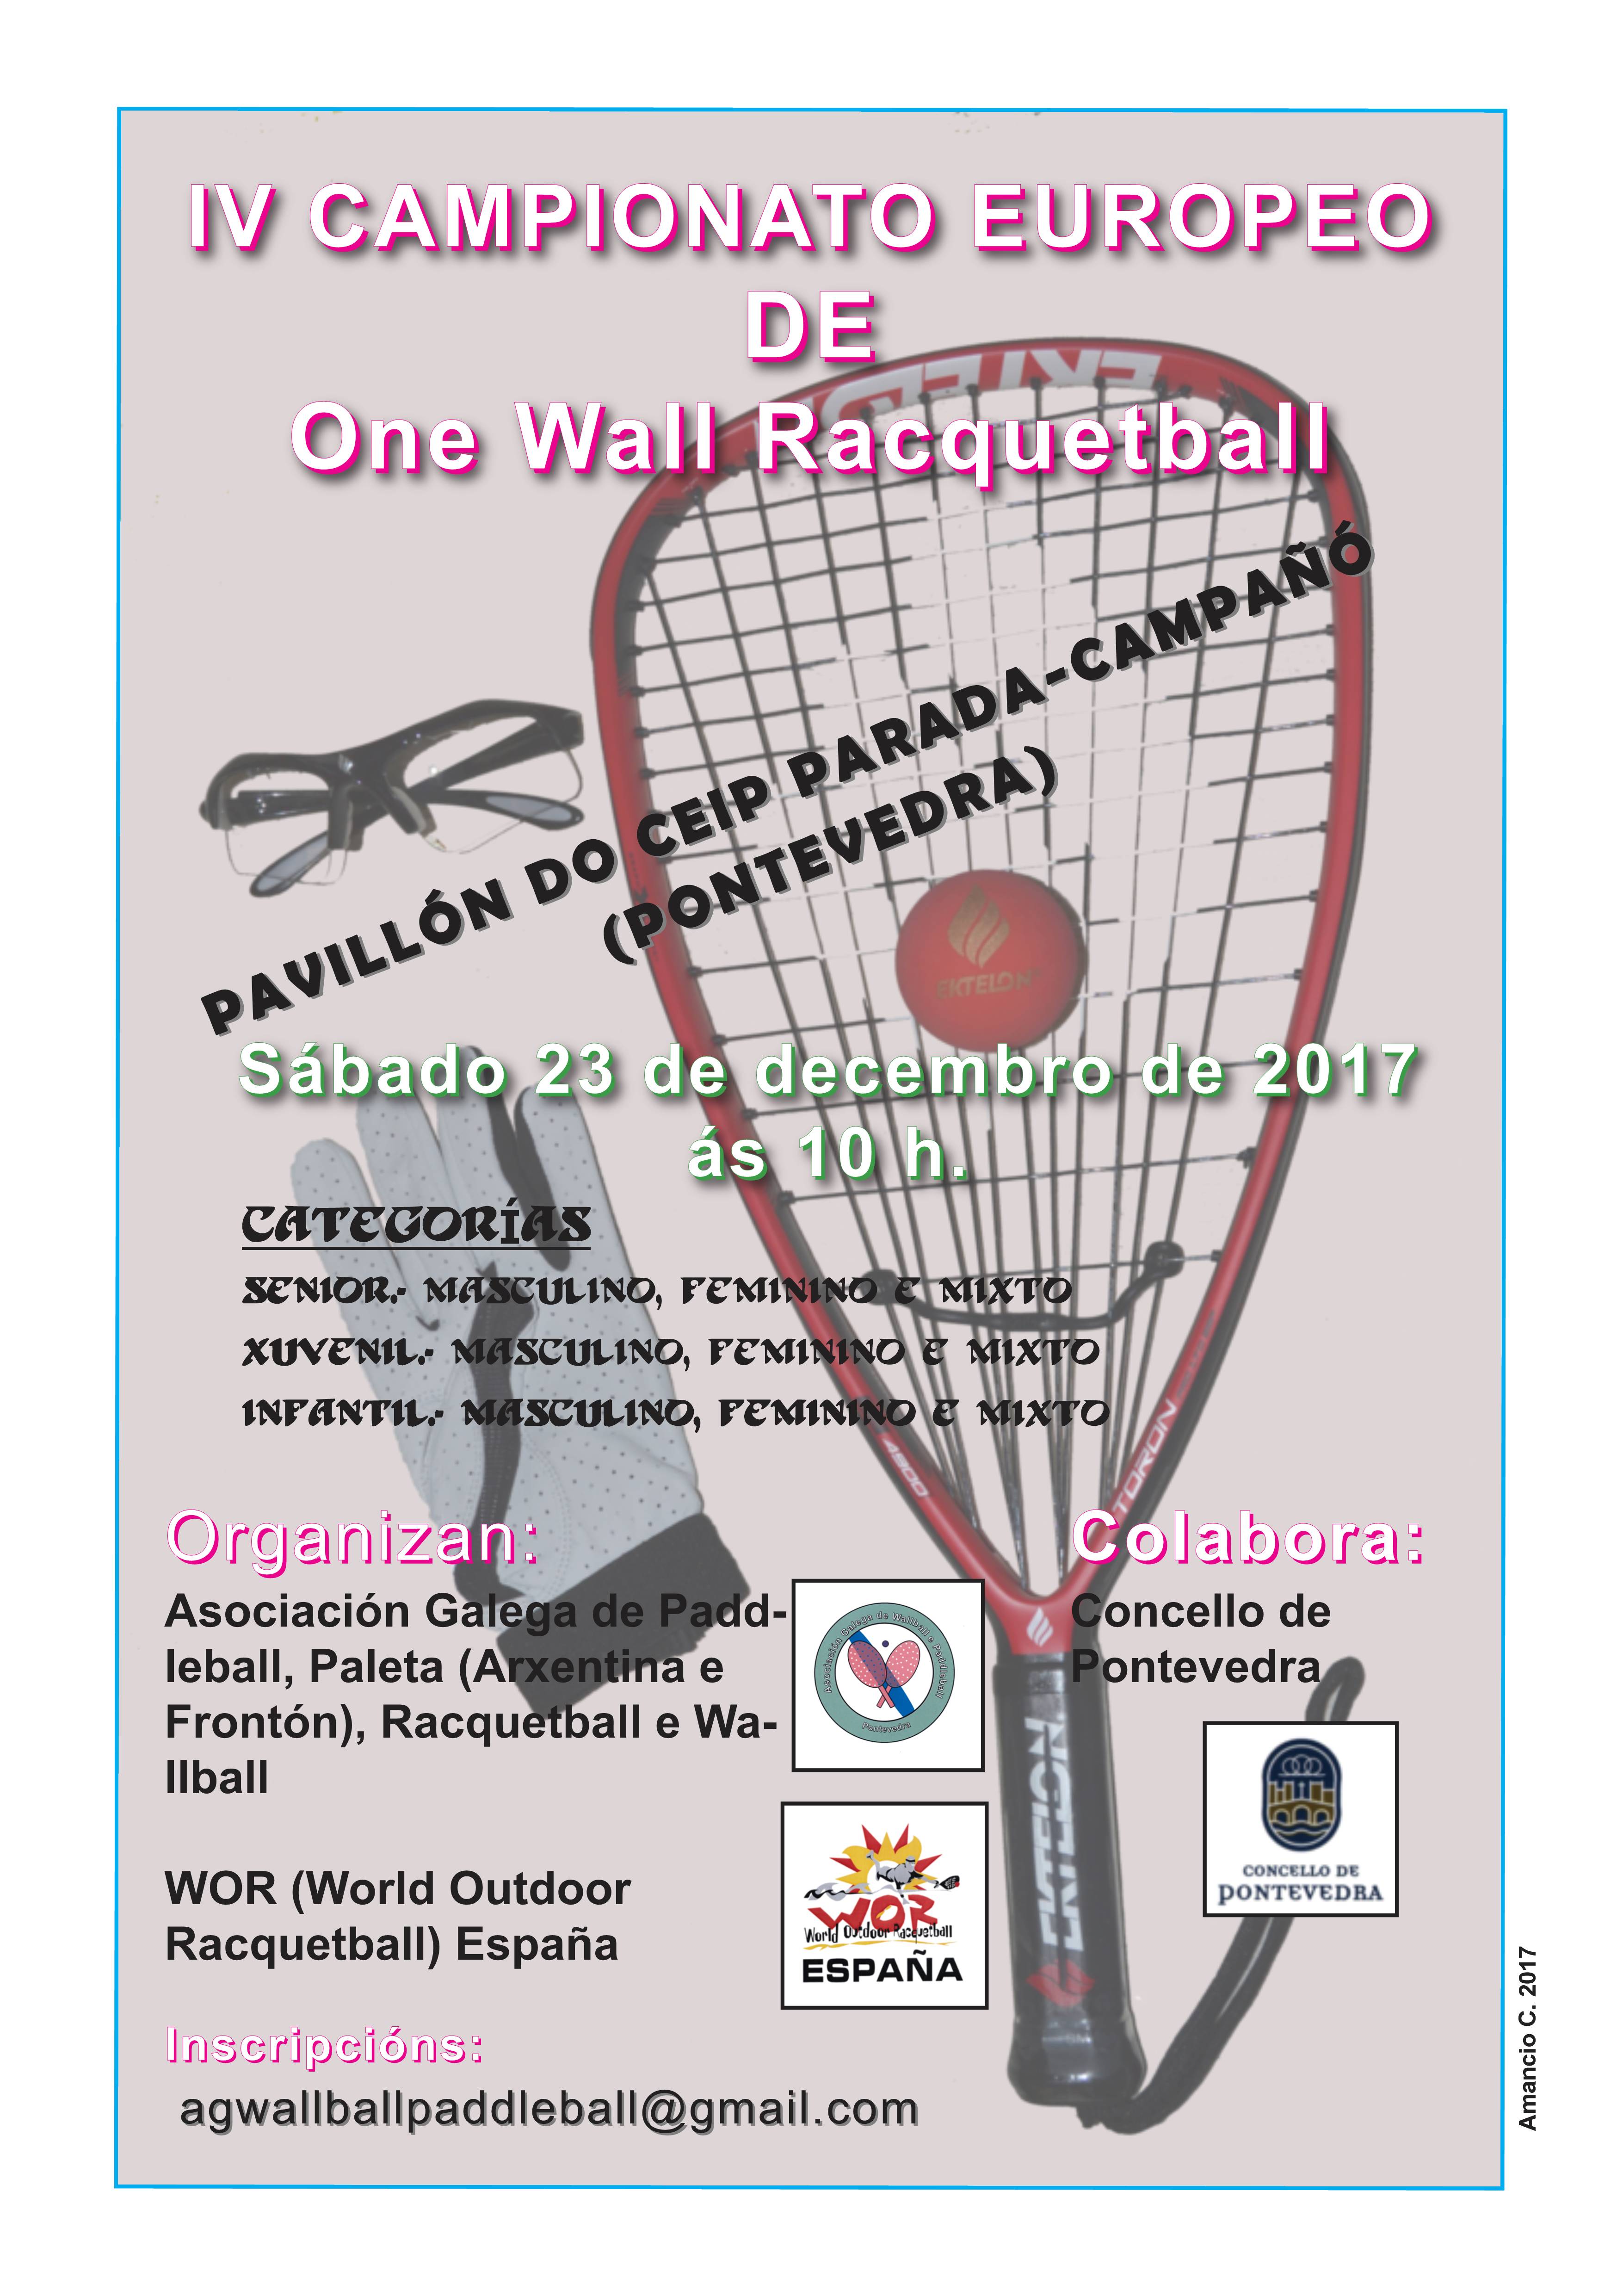 Outdoor Racquetball Spain